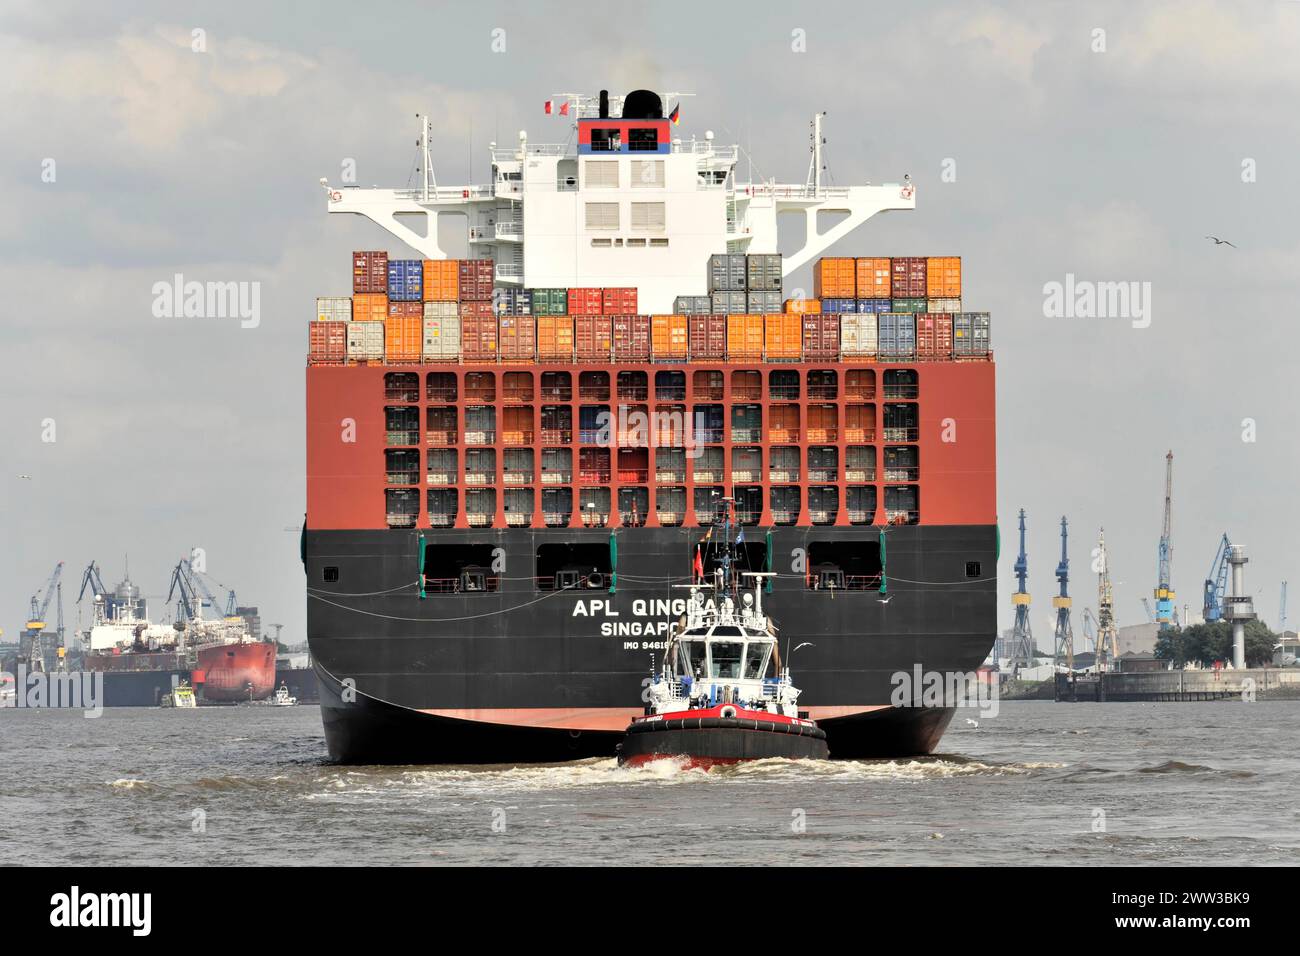 APL QINGDAO, poppa di una grande nave portacontainer sull'Elba, supportata da un rimorchiatore, Amburgo, città anseatica, Germania Foto Stock